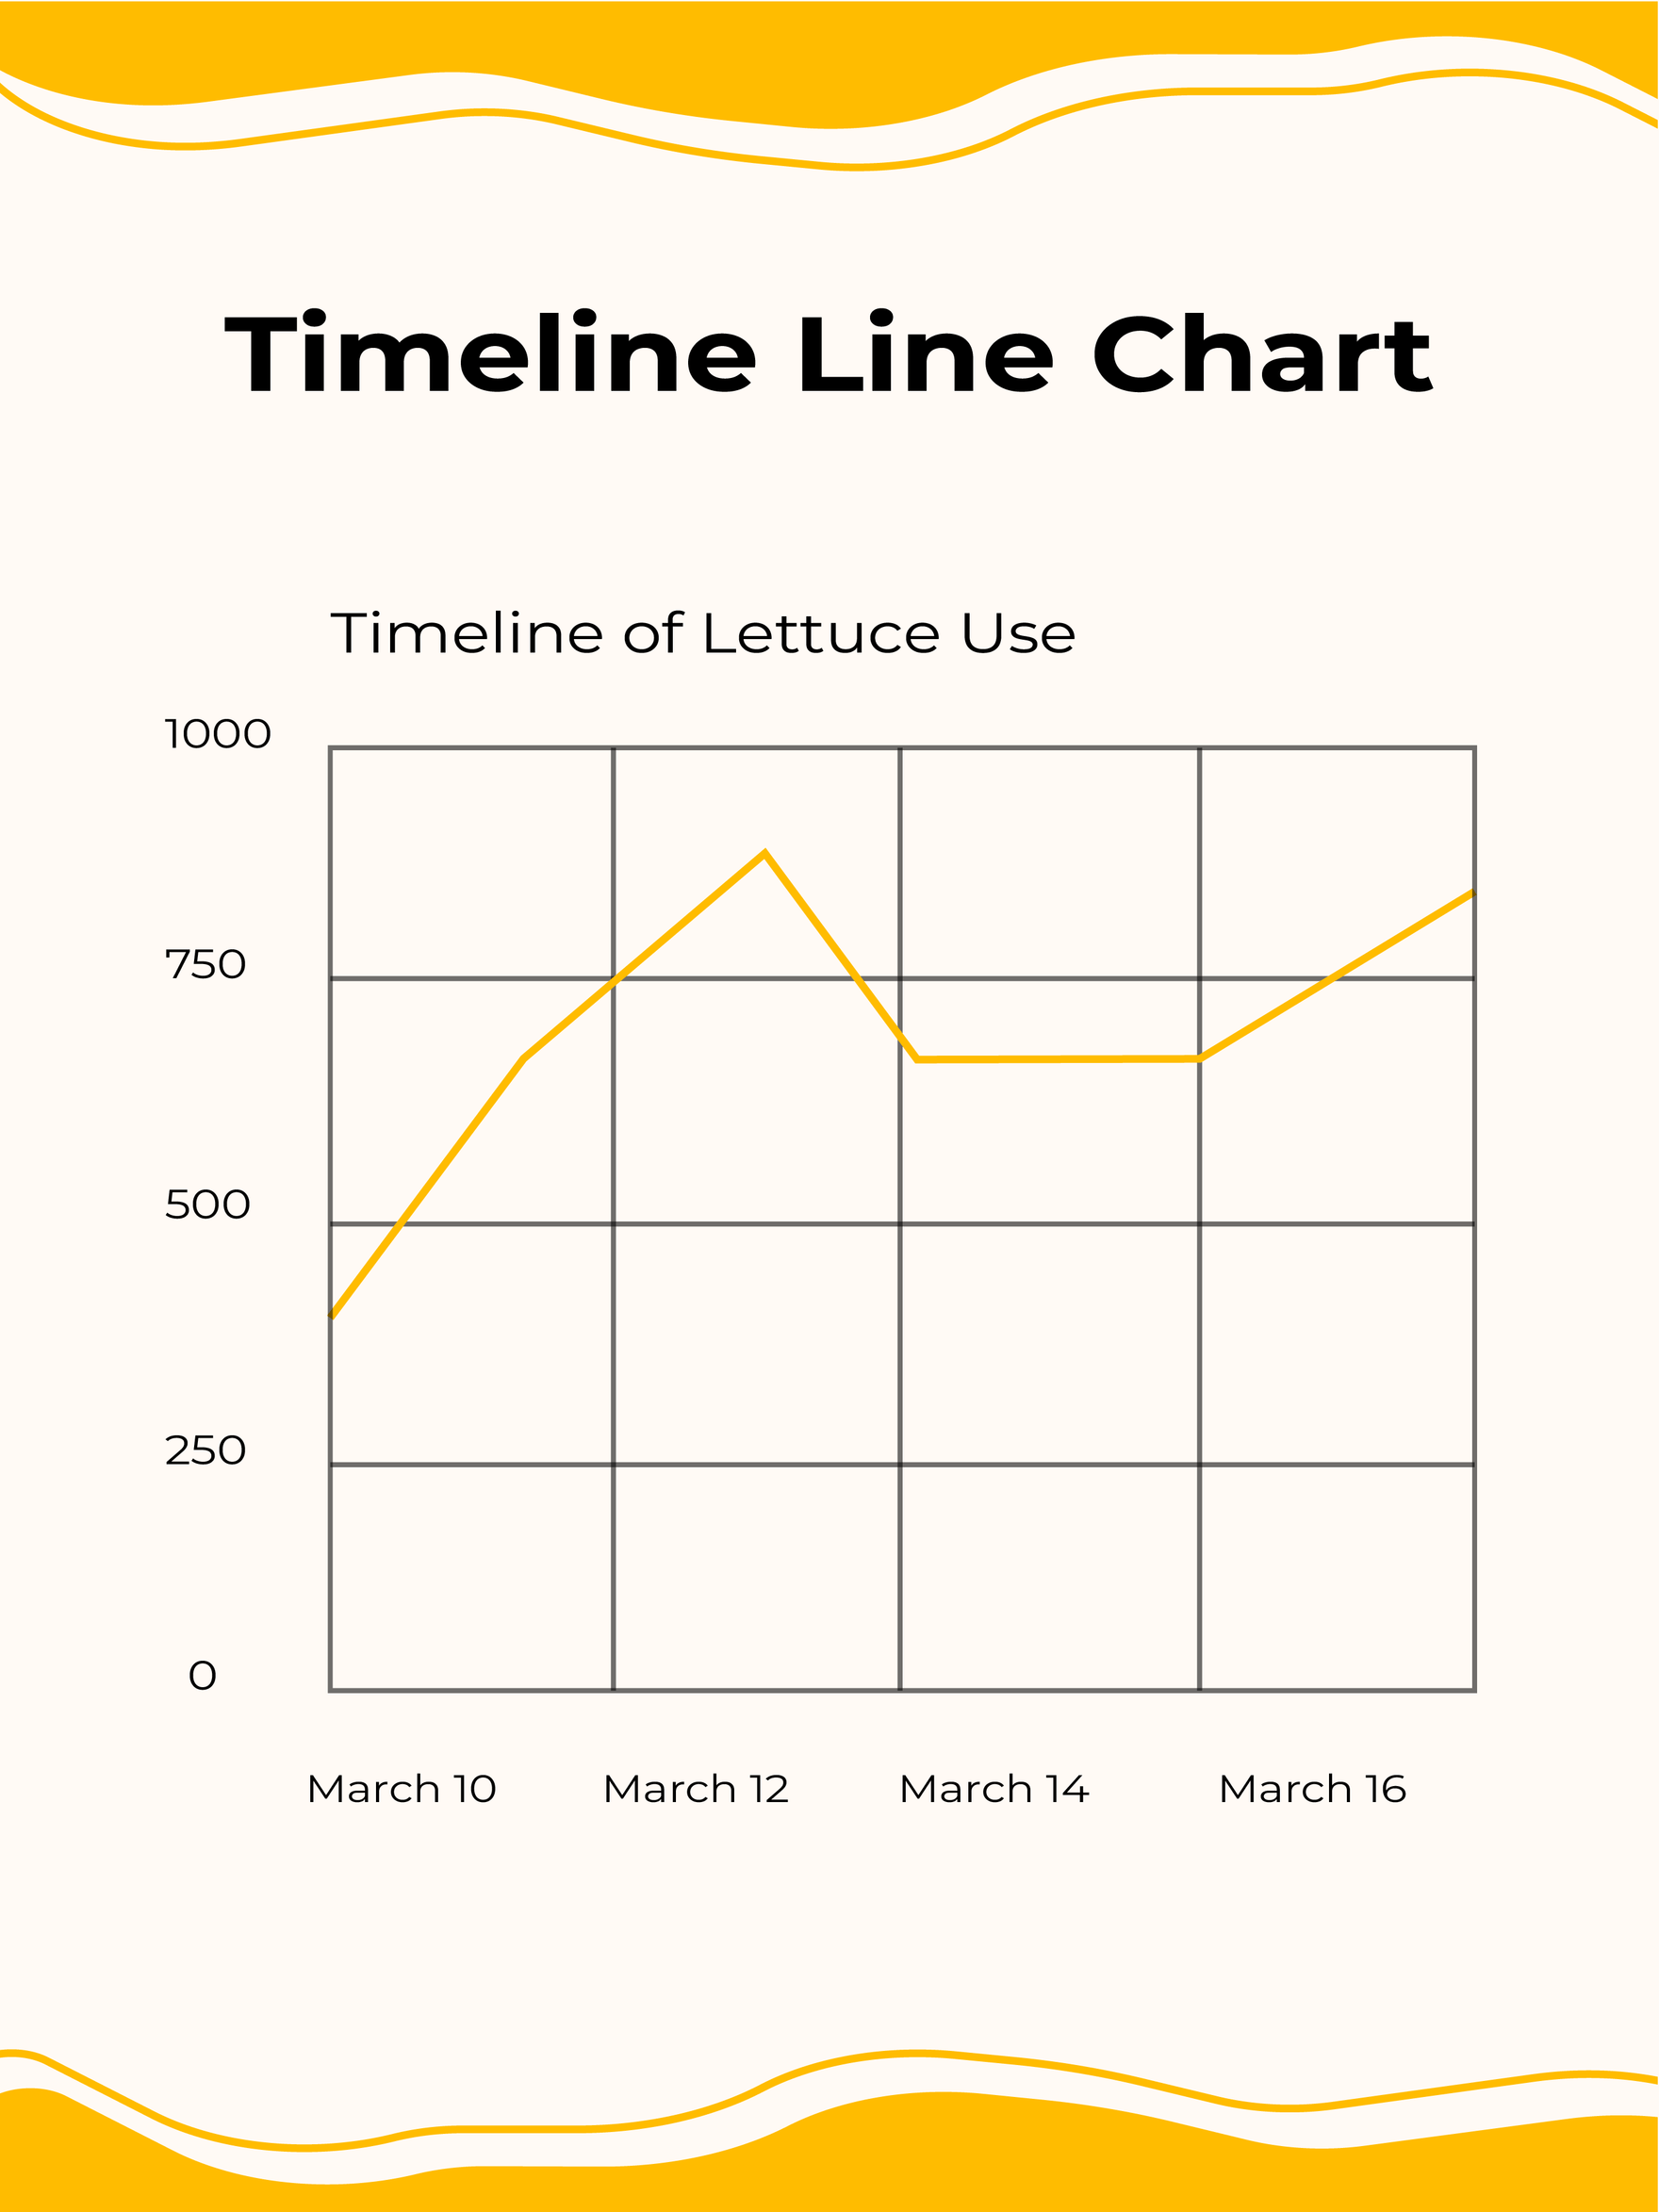 Timeline Line chart